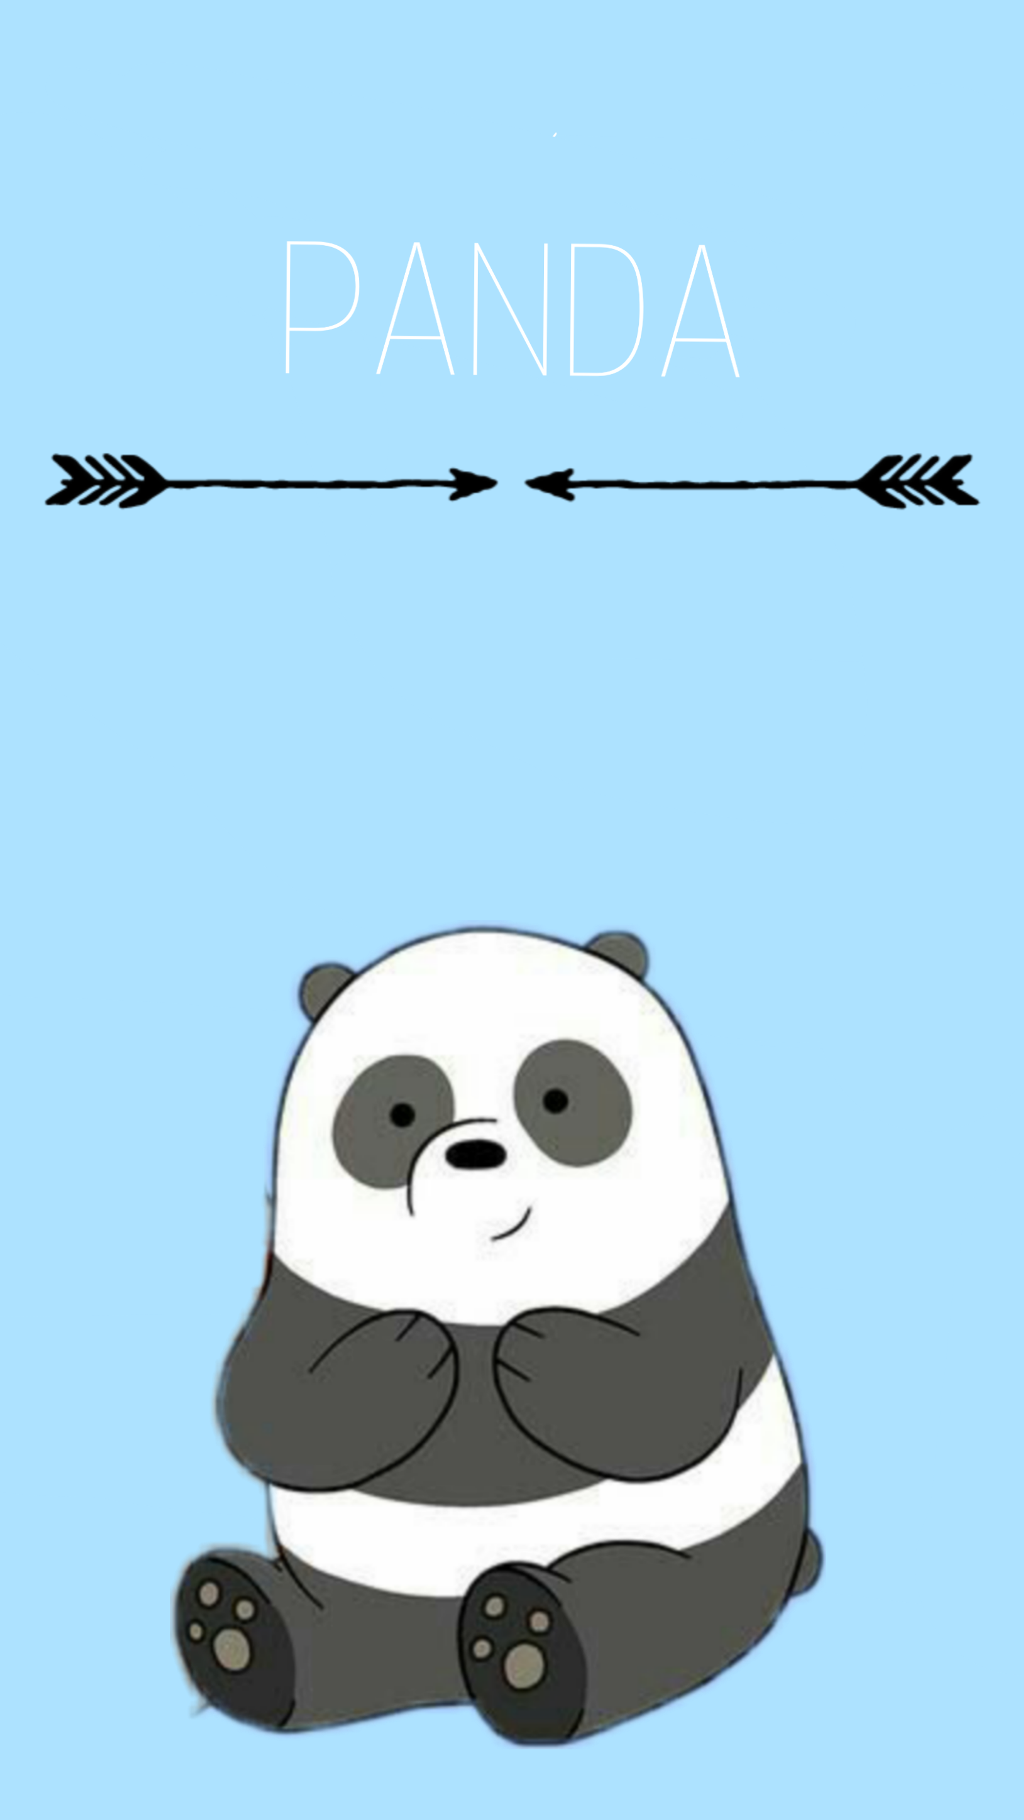 Aesthetic panda